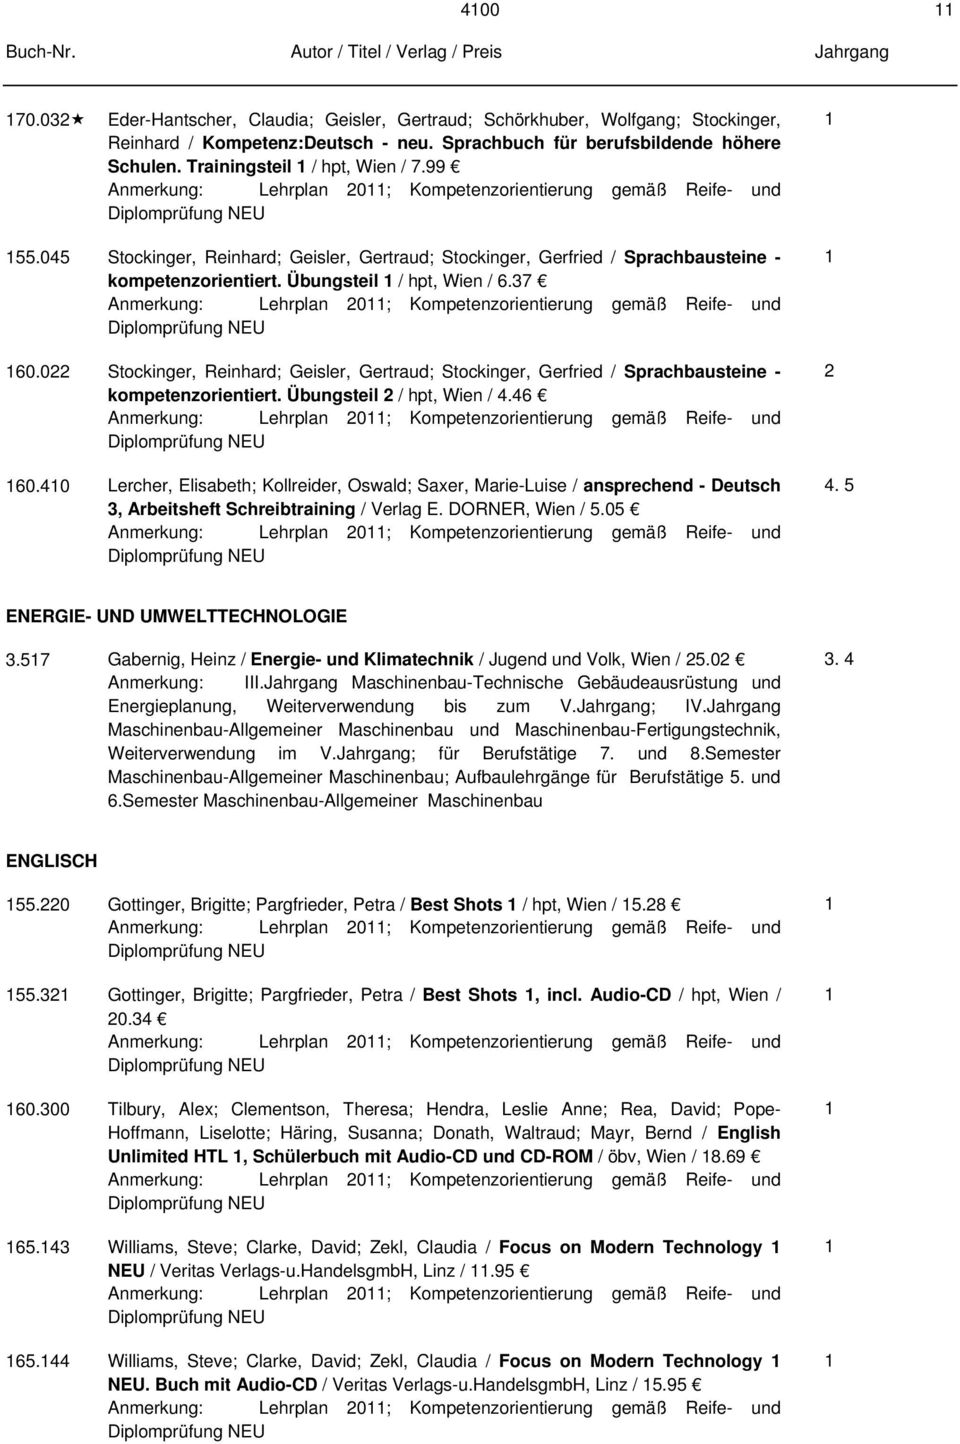 7 ; Kompetenzorientierung gemäß Reife- und 60.0 Stockinger, Reinhard; Geisler, Gertraud; Stockinger, Gerfried / Sprachbausteine - kompetenzorientiert. Übungsteil / hpt, Wien /.